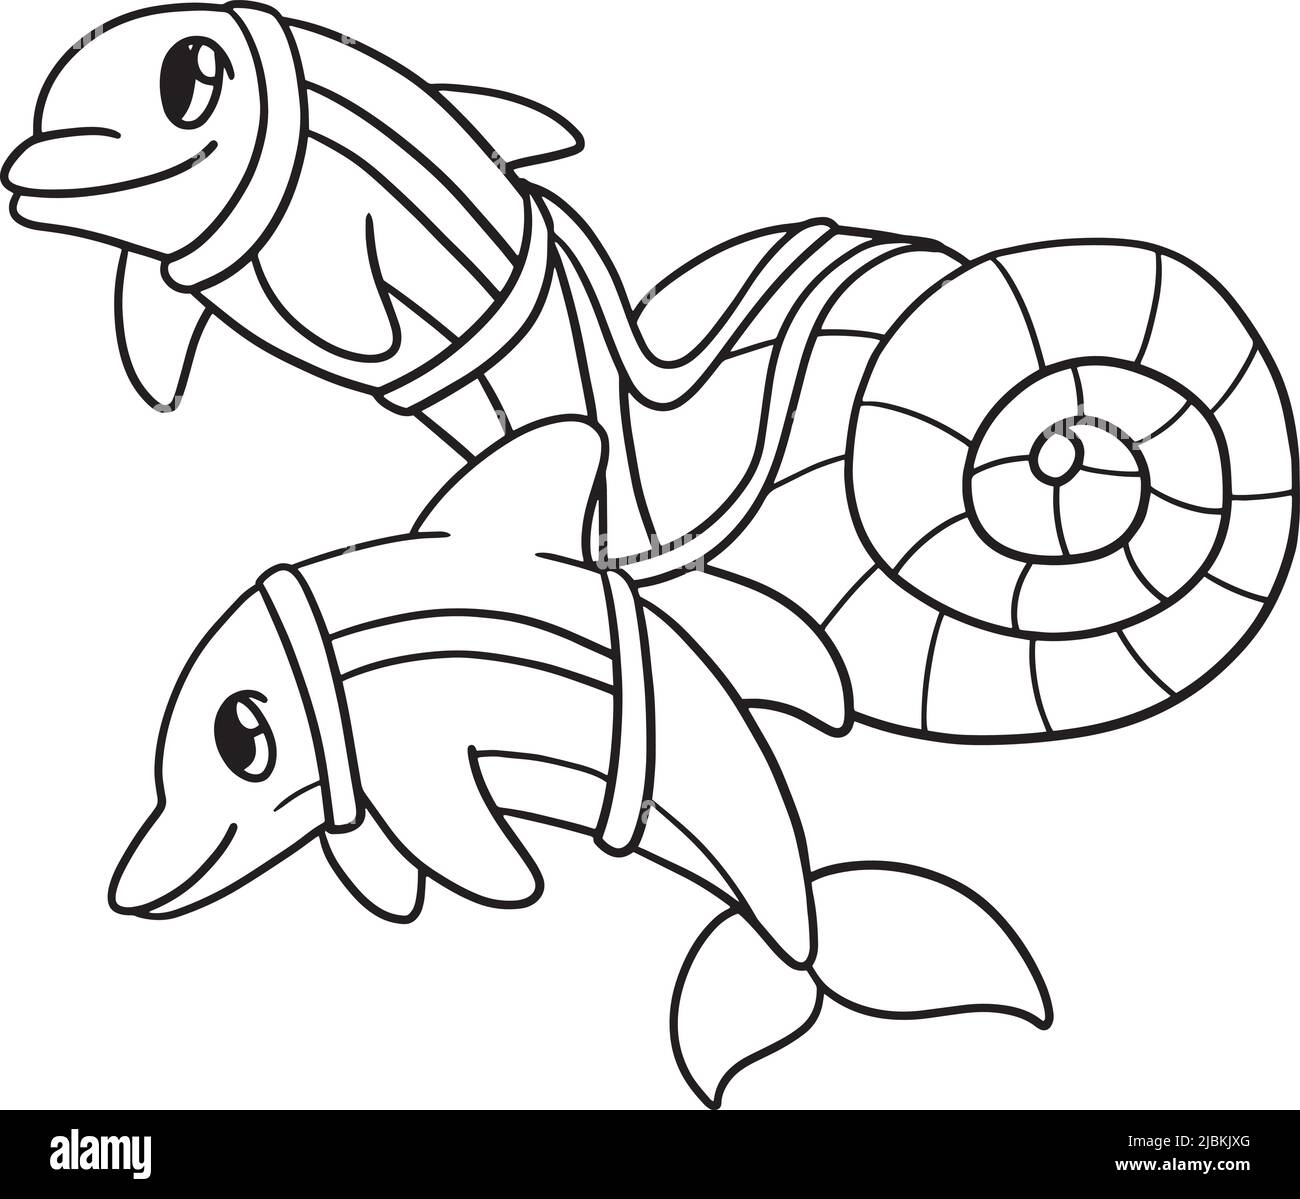 Deux Dolphin Isolated coloriage page pour enfants Illustration de Vecteur